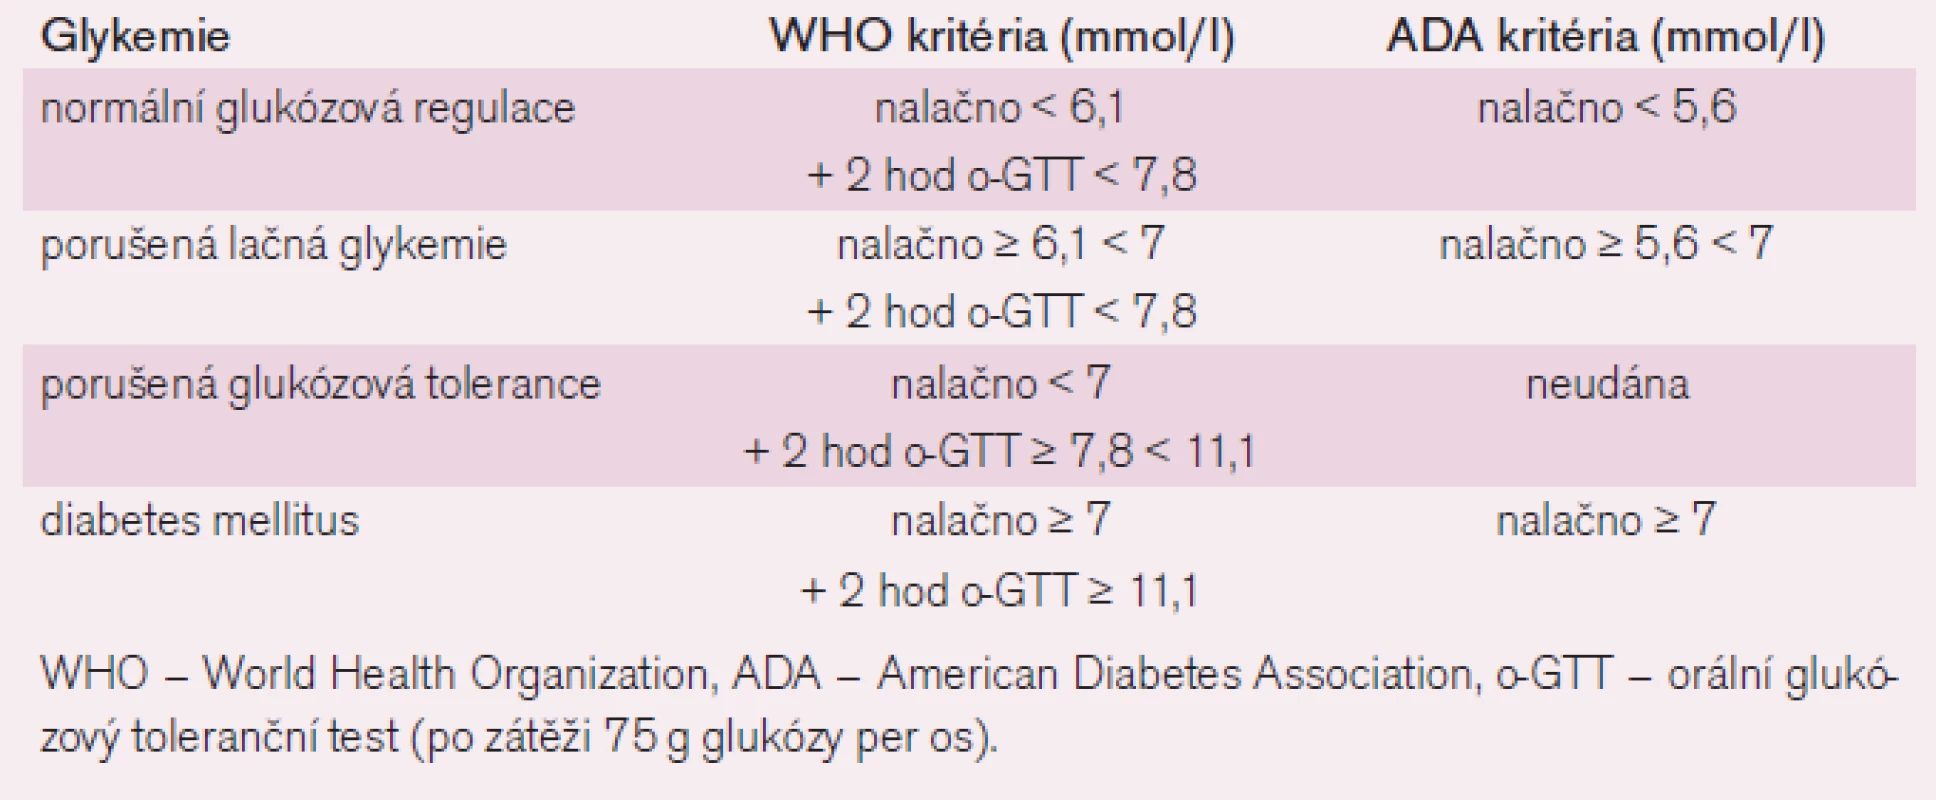 Porušená glukózová homeostáza podle kritérií WHO (1999) a ADA (2003) [5].